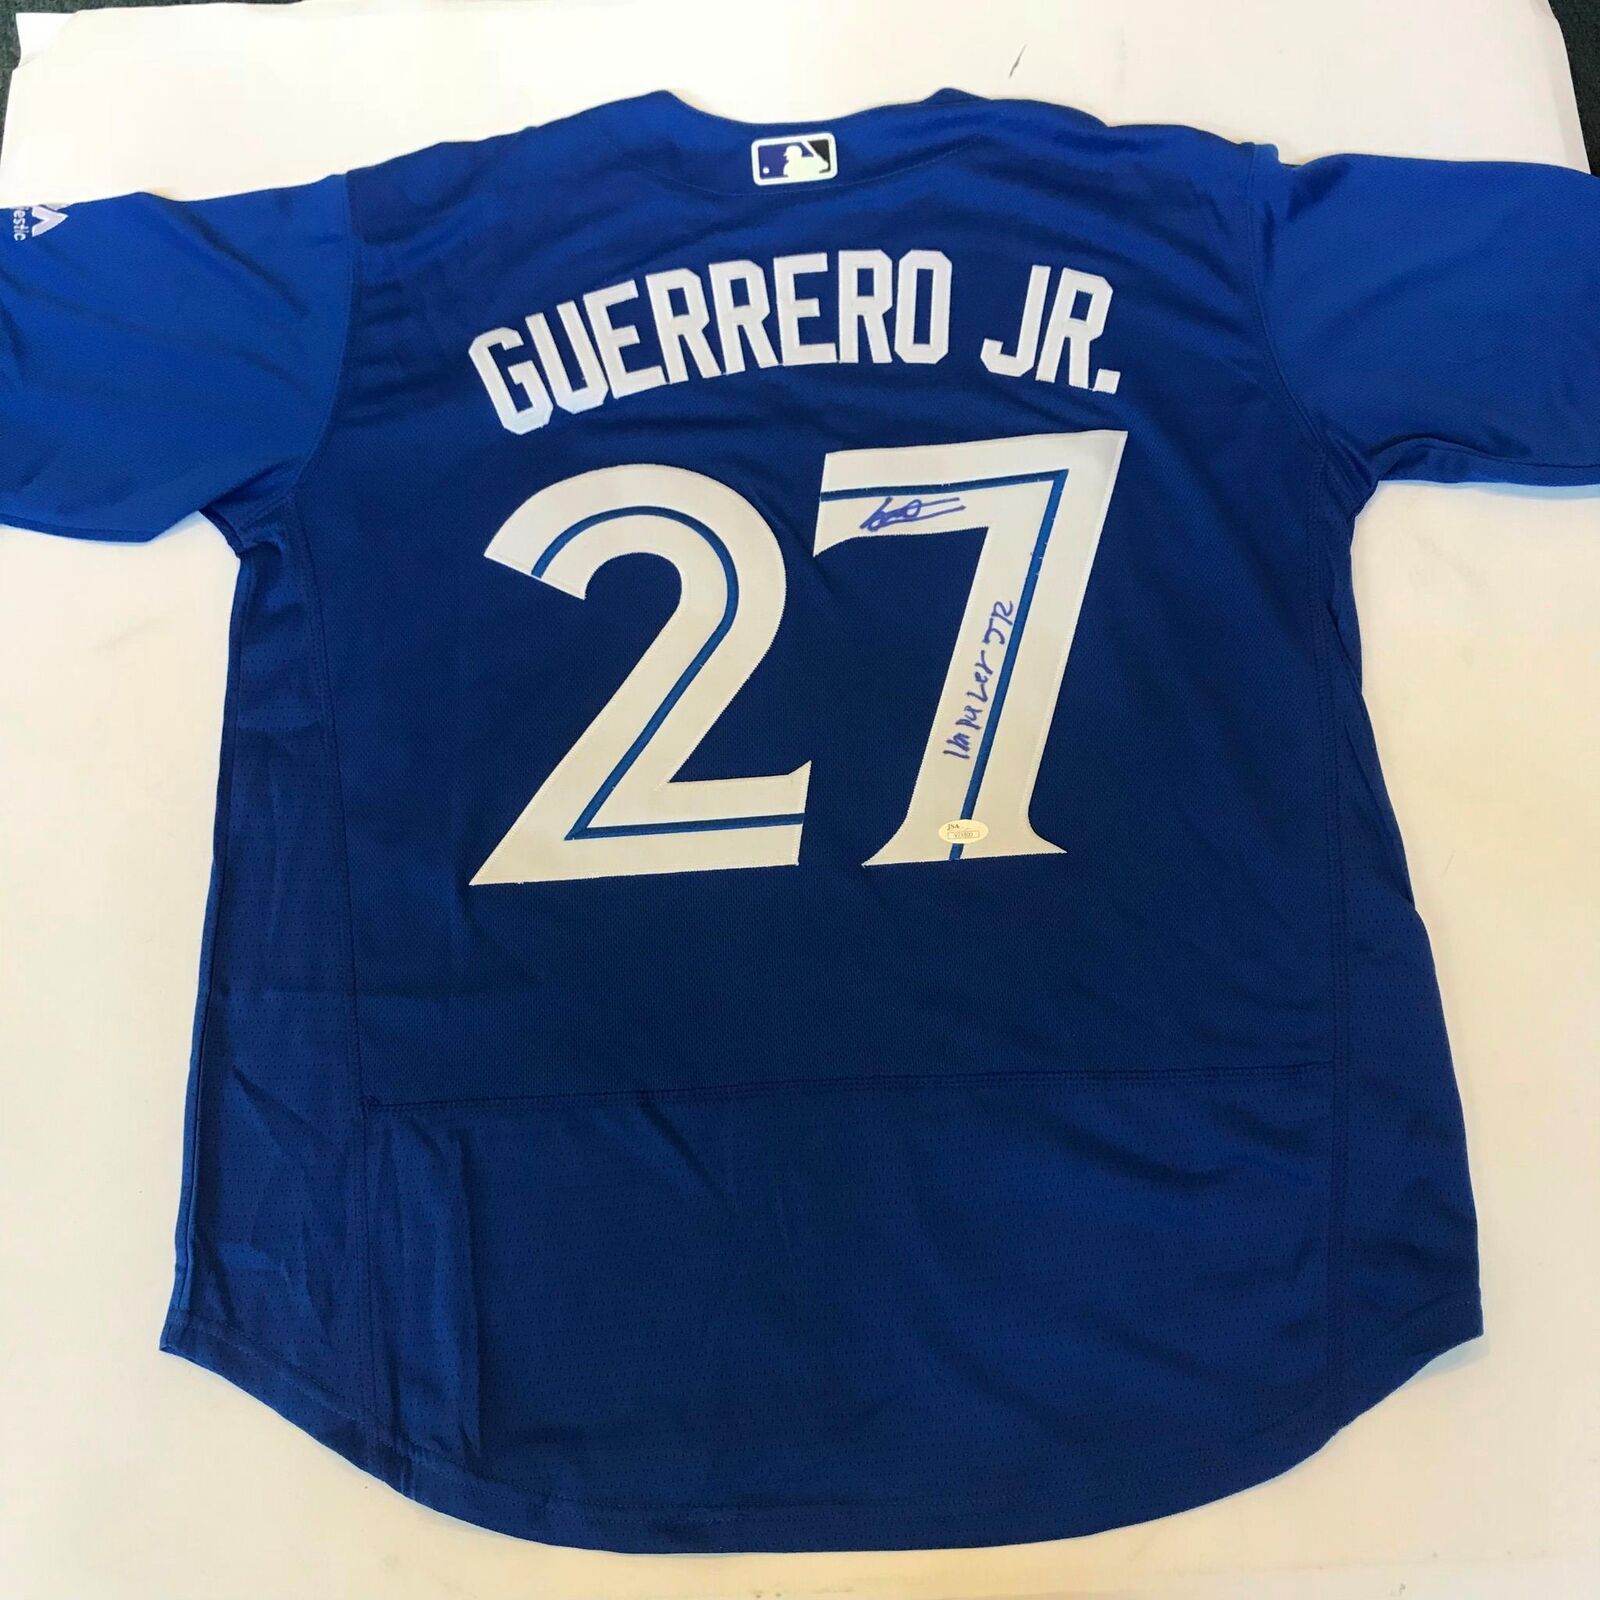 Vladimir Guerrero Jr Impaler Jr Signed Inscribed Toronto Blue Jays Jersey  JSA